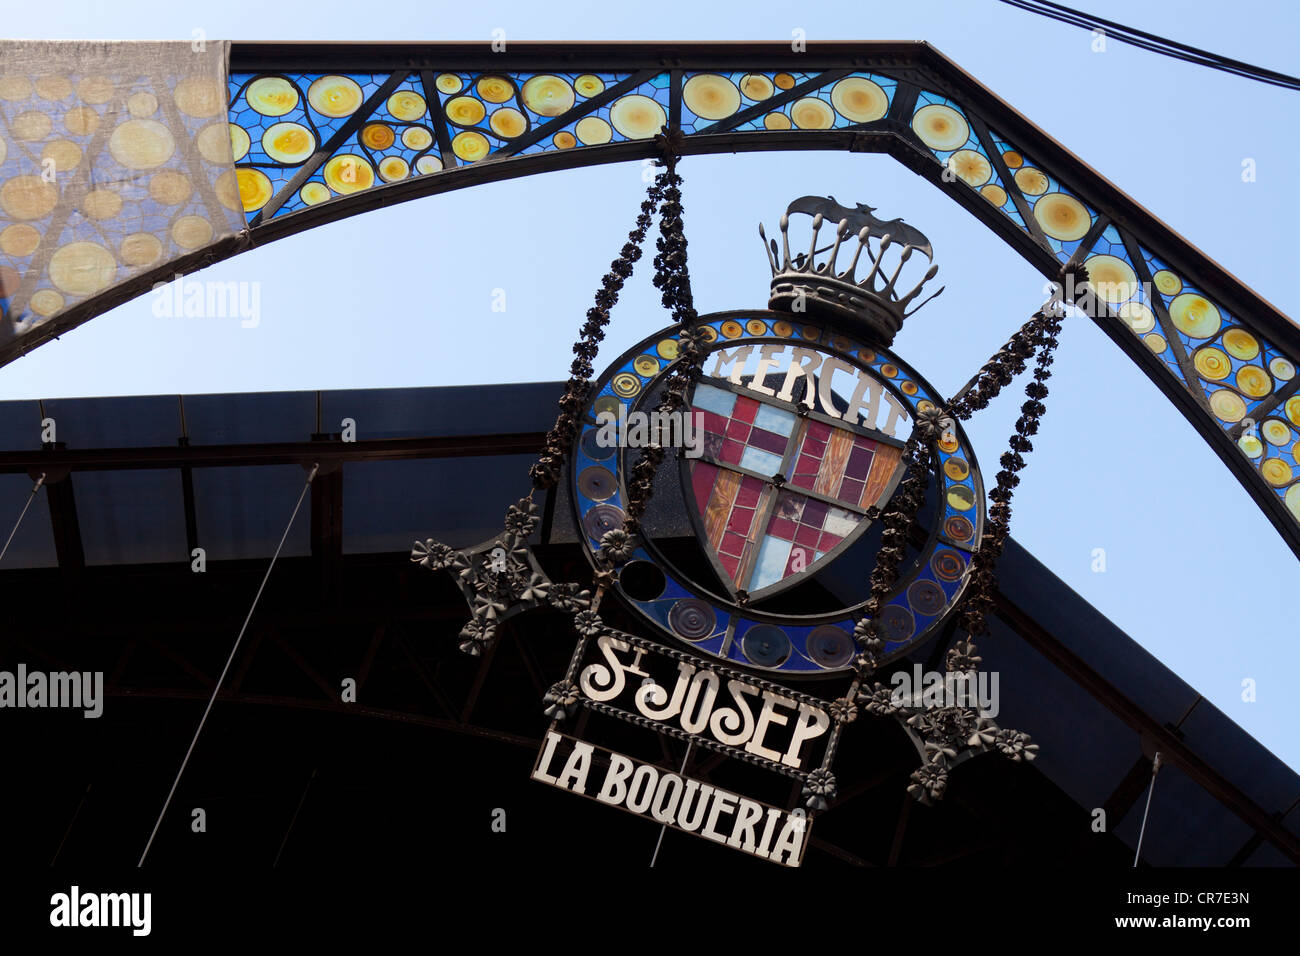 Decorative sign made of glass, St. Josep La Boqueria, entrance portal, market, Rambla, Rambles, pedestrian area, Barcelona Stock Photo